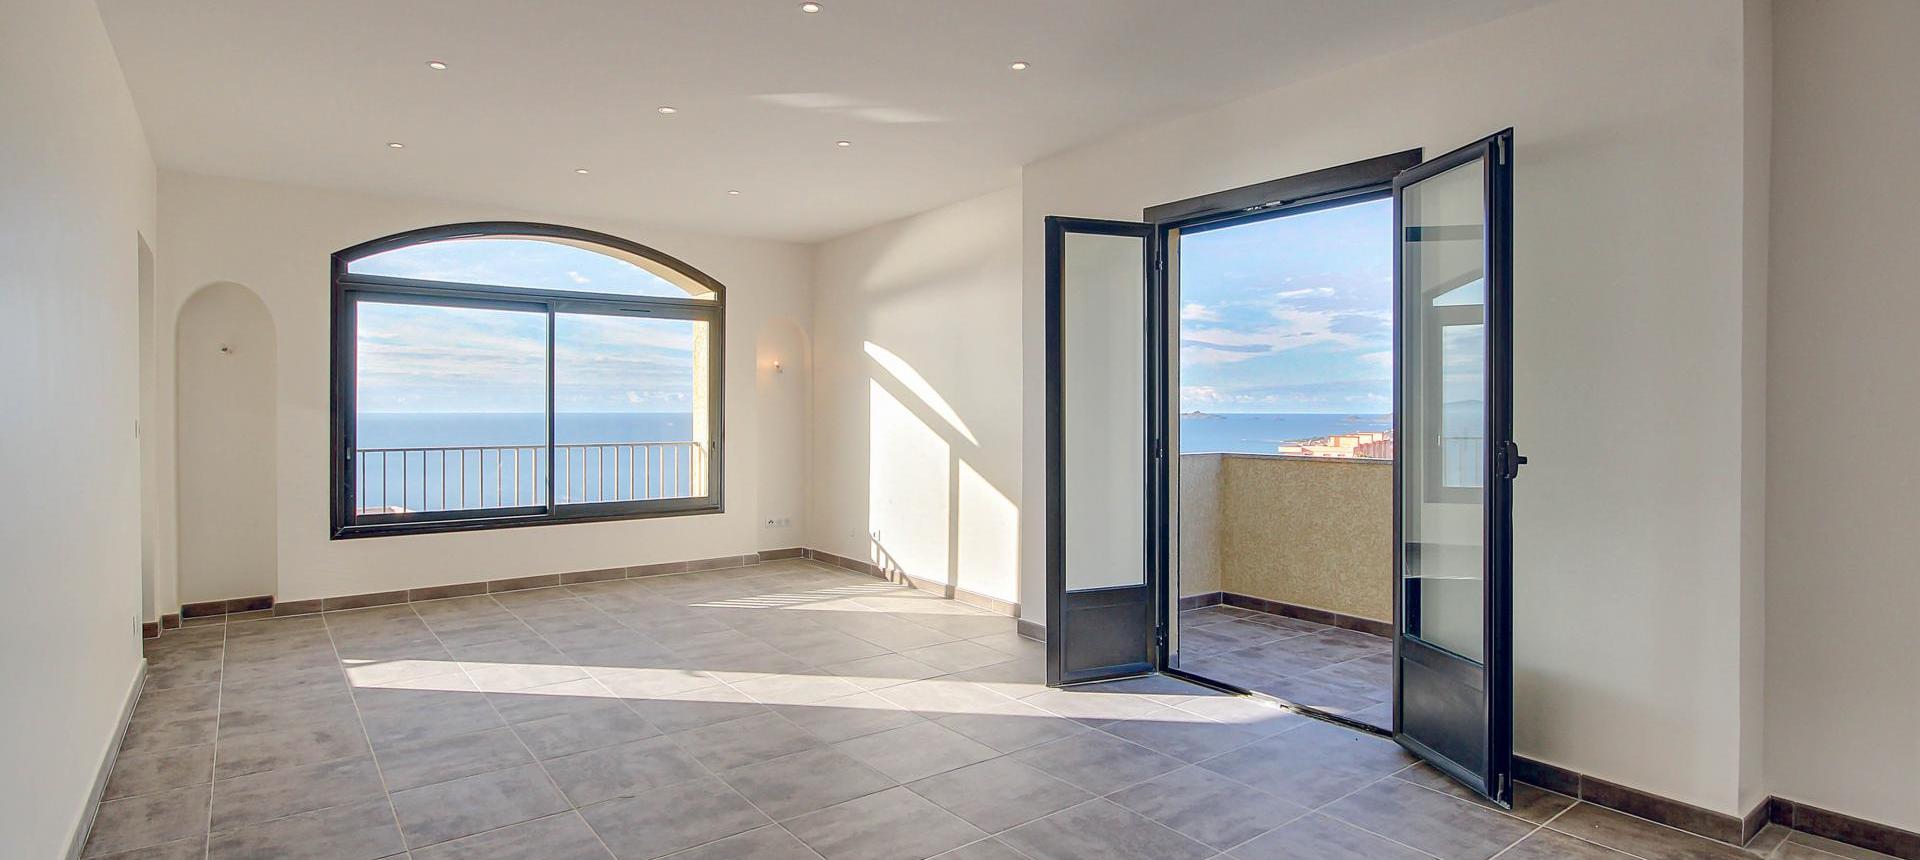 En Corse, à Ajaccio, Route des Sanguinaires, Vente d'un appartement F3 de 63 m² avec terrasse et vue mer